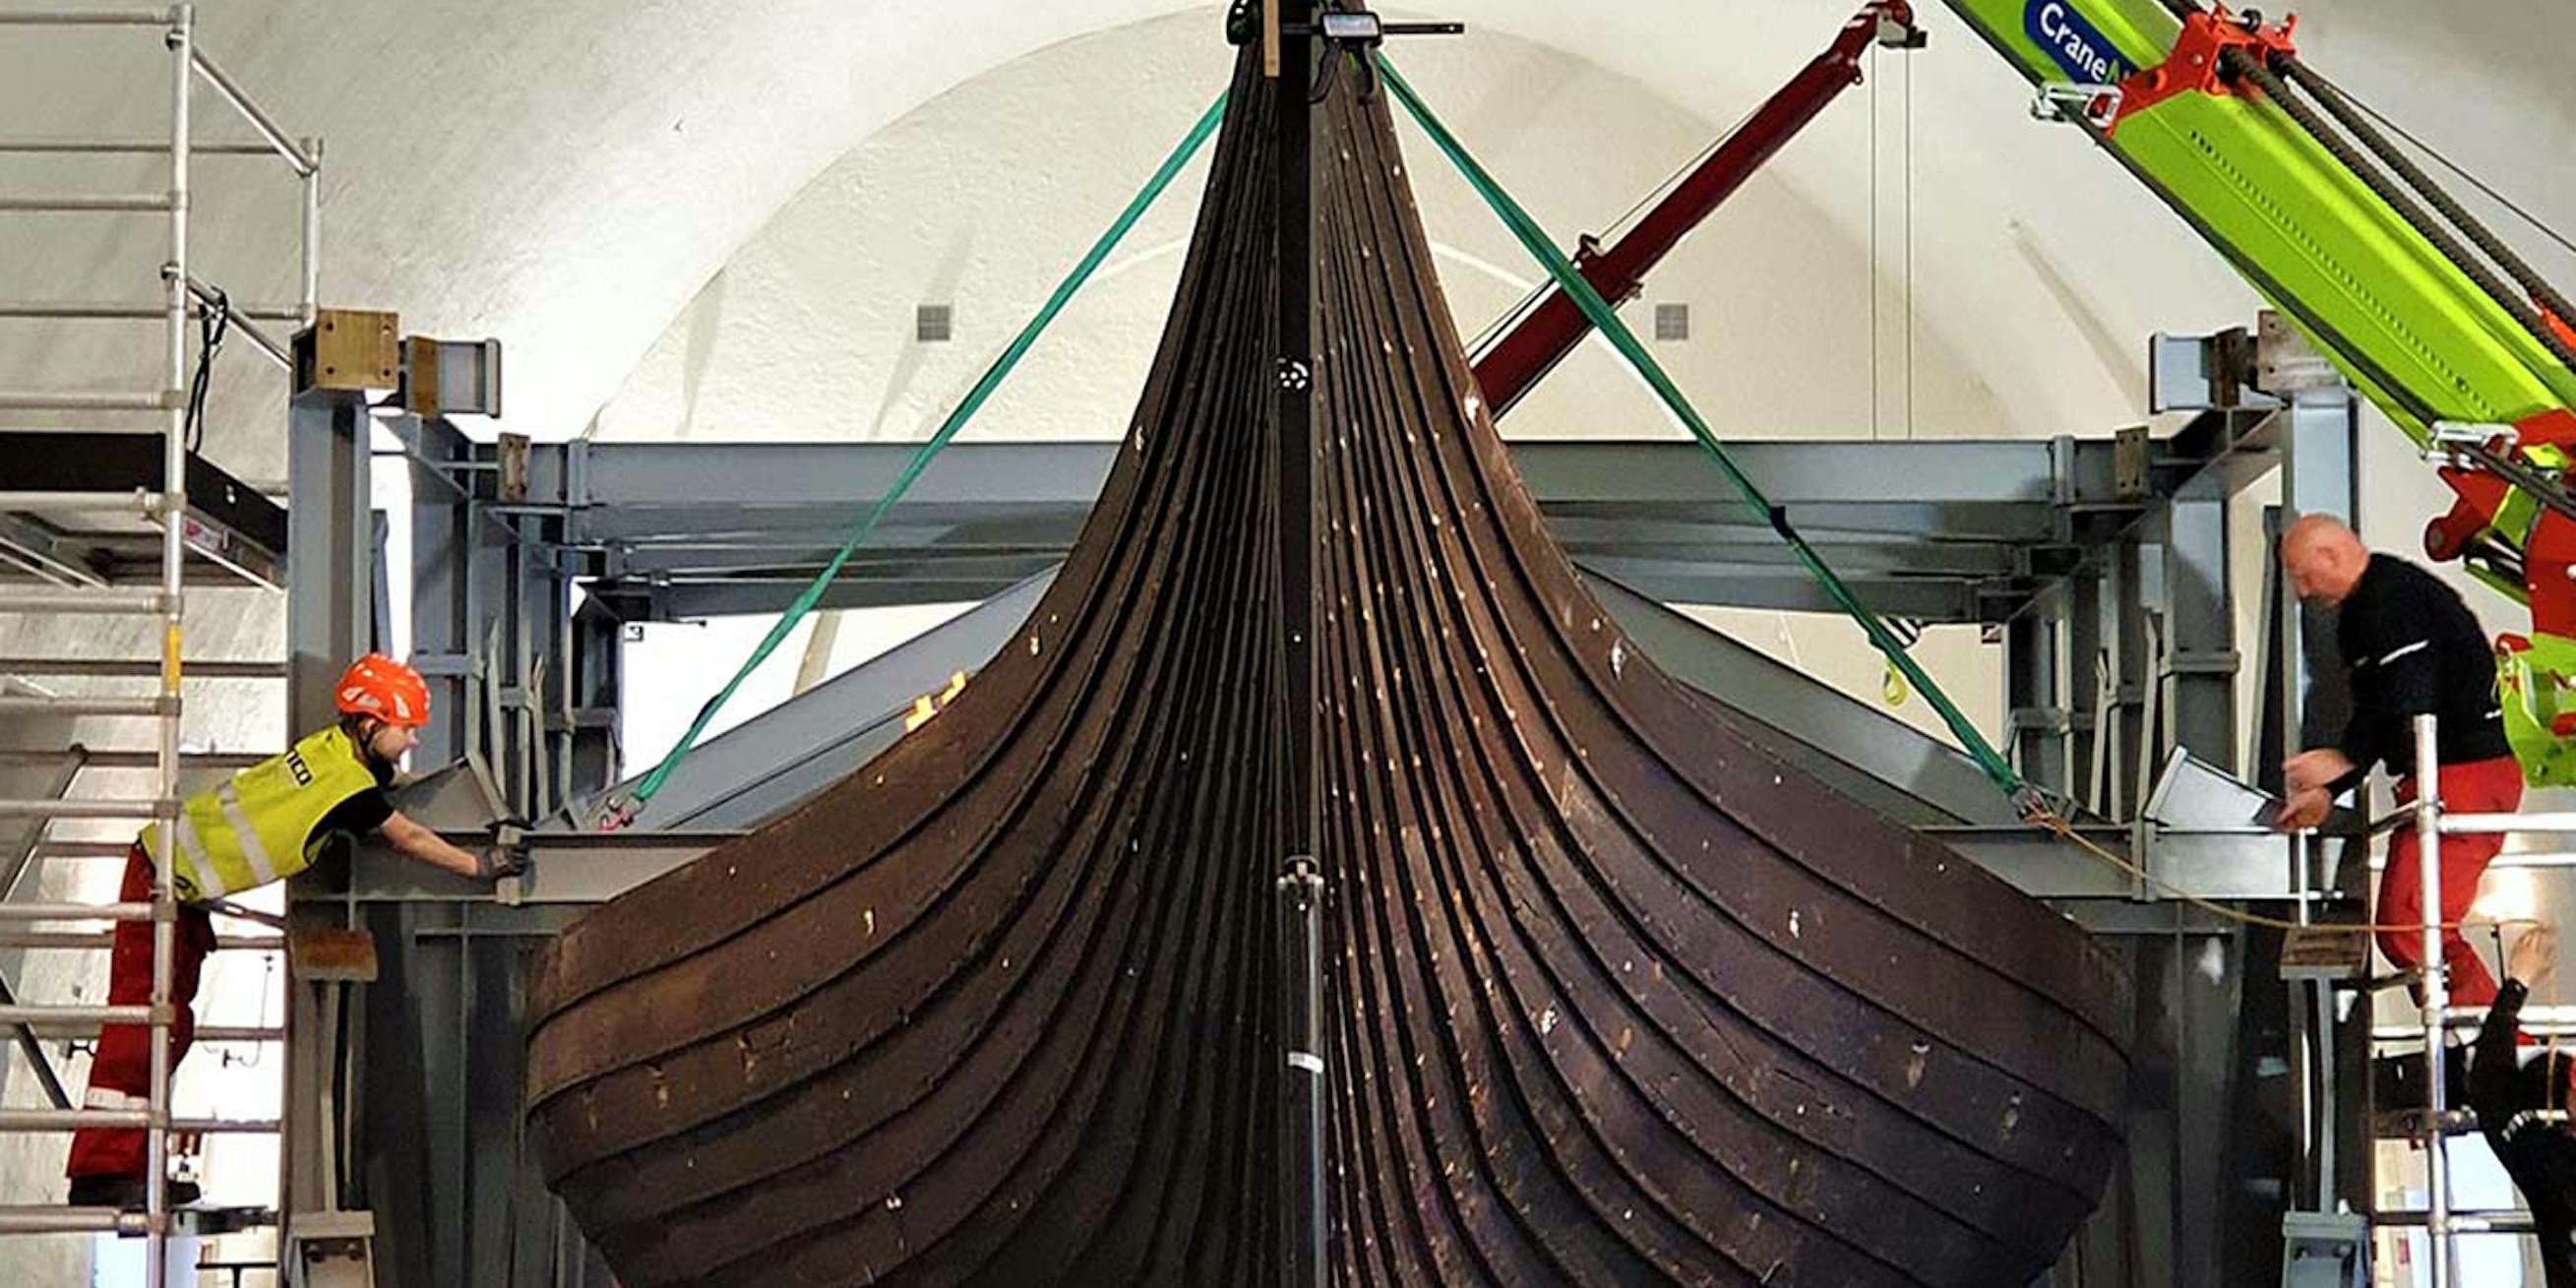 Gokstad Vikingaskepp stålkonstruktion